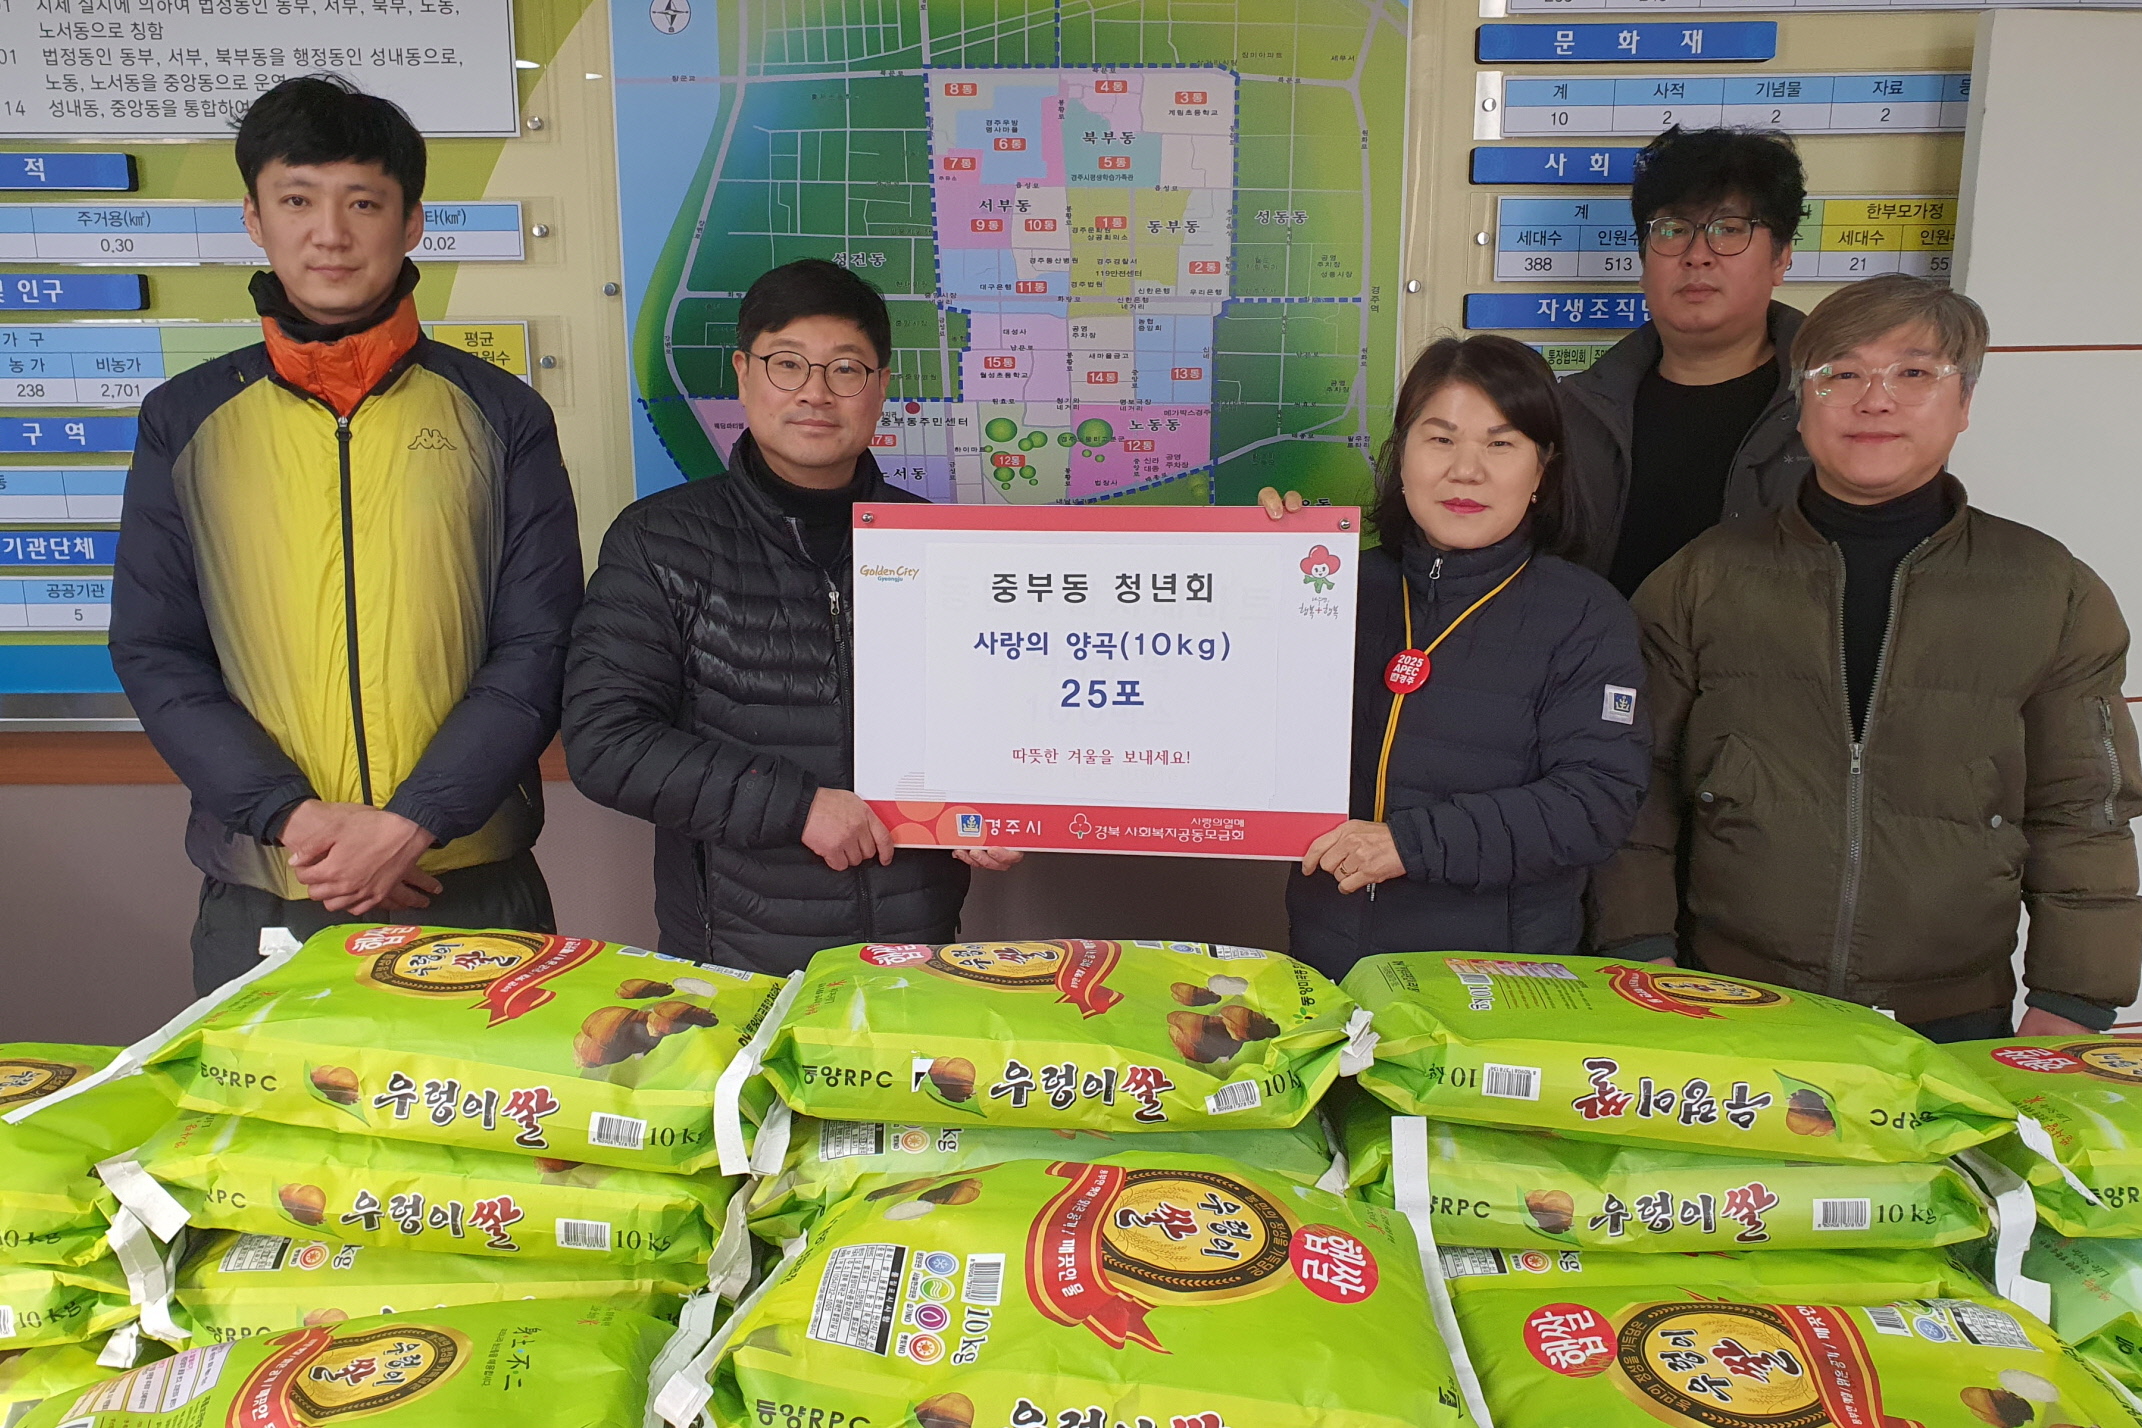 지난 26일 중부동 청년회에서 지역 내 어려운 이웃들을 위해 양곡(10kg) 25포를 기탁했다.